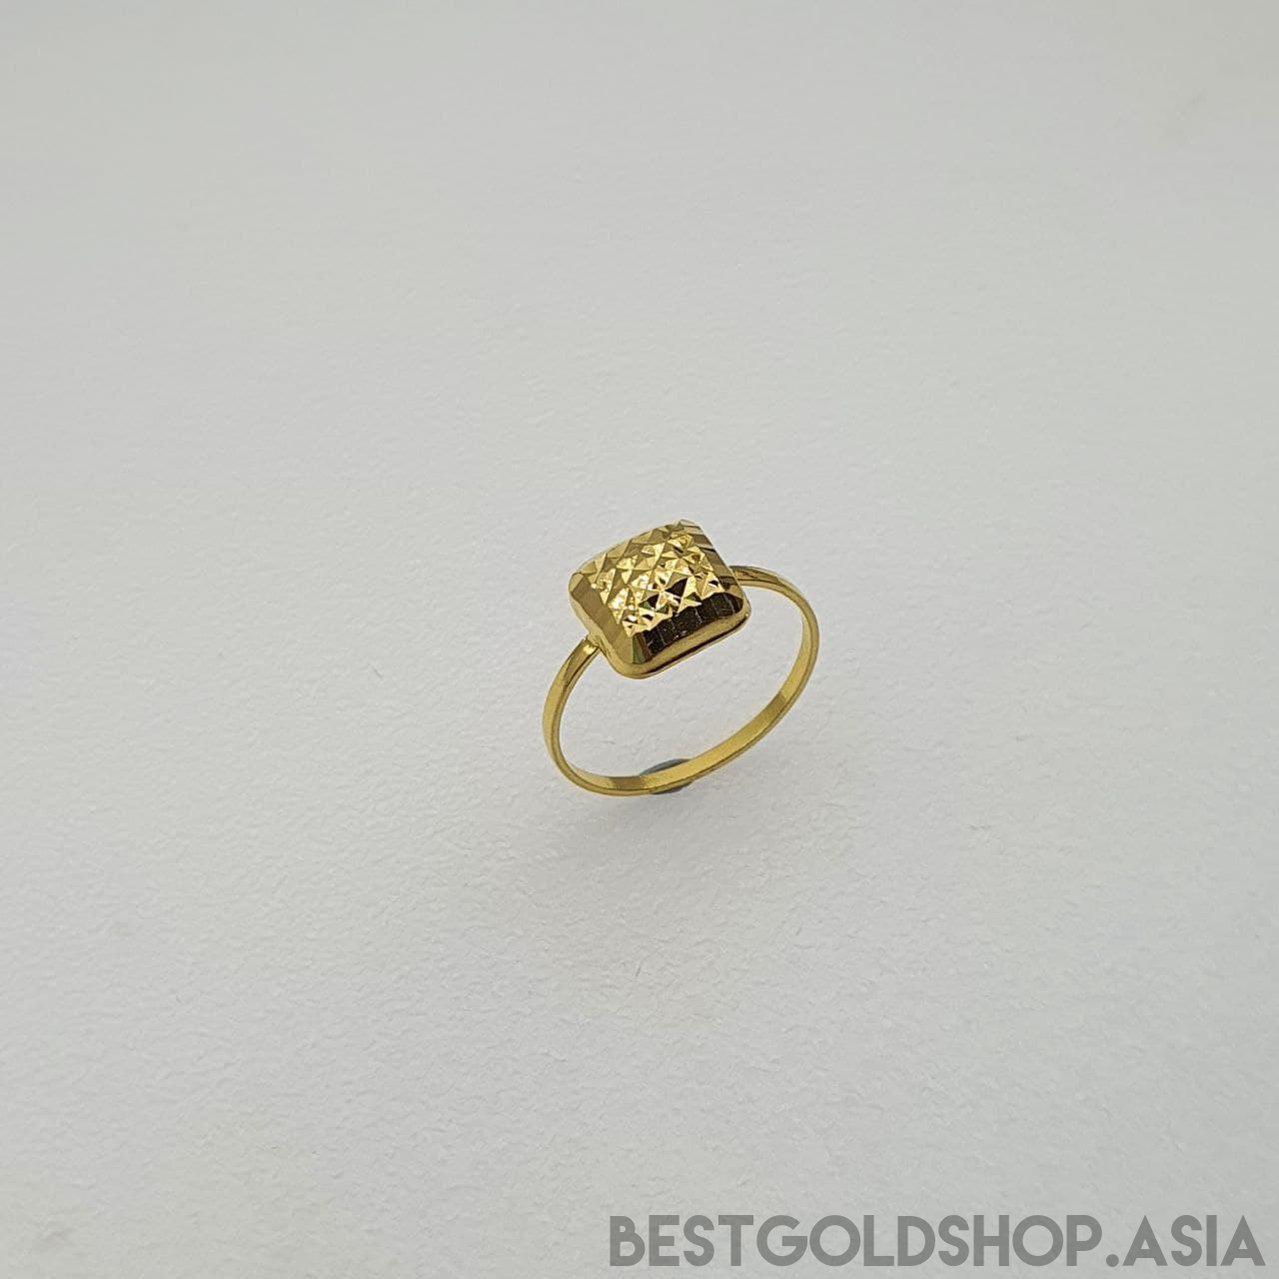 22k / 916 Gold Biscot Ring V2-916 gold-Best Gold Shop